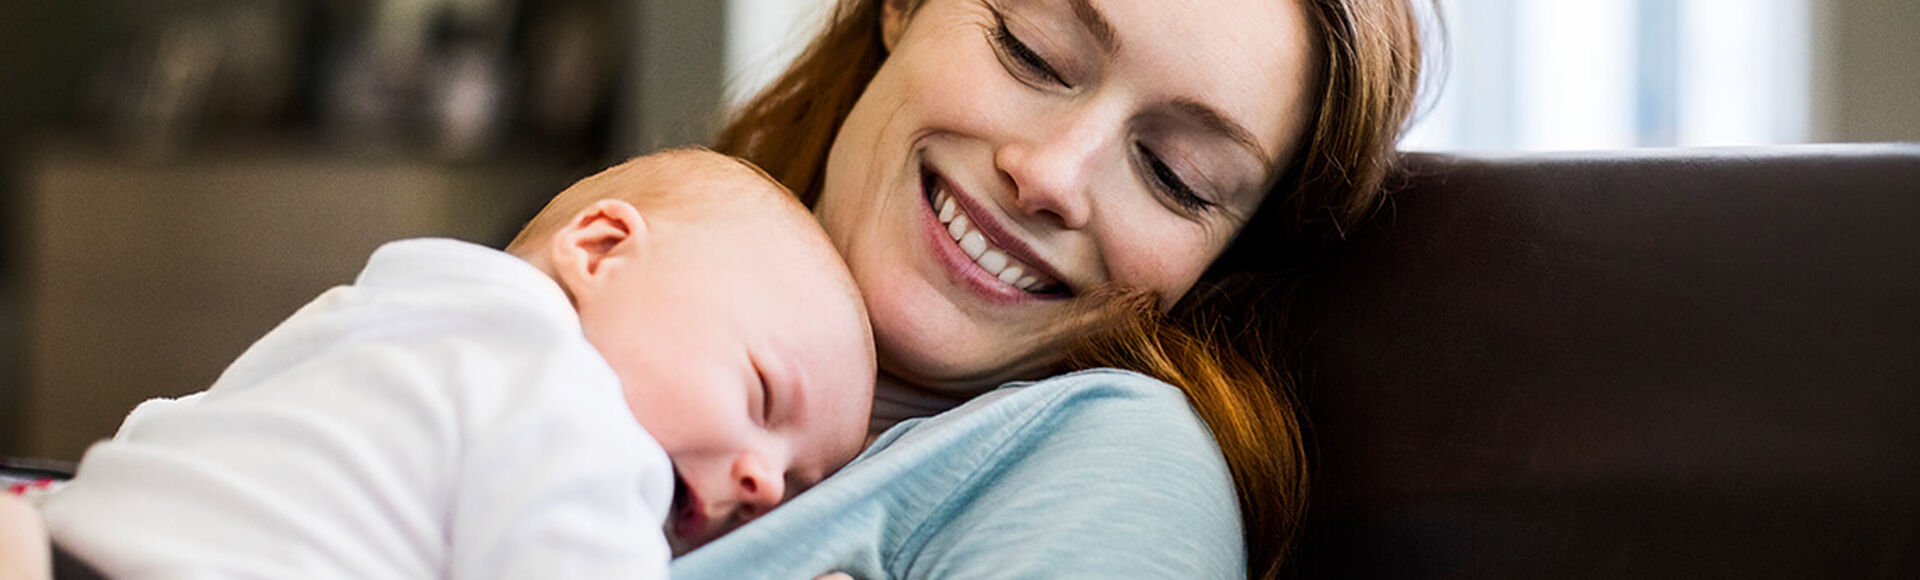 ¿Cómo hacer que los bebés se duerman rápido? | Más Abrazos by Huggies